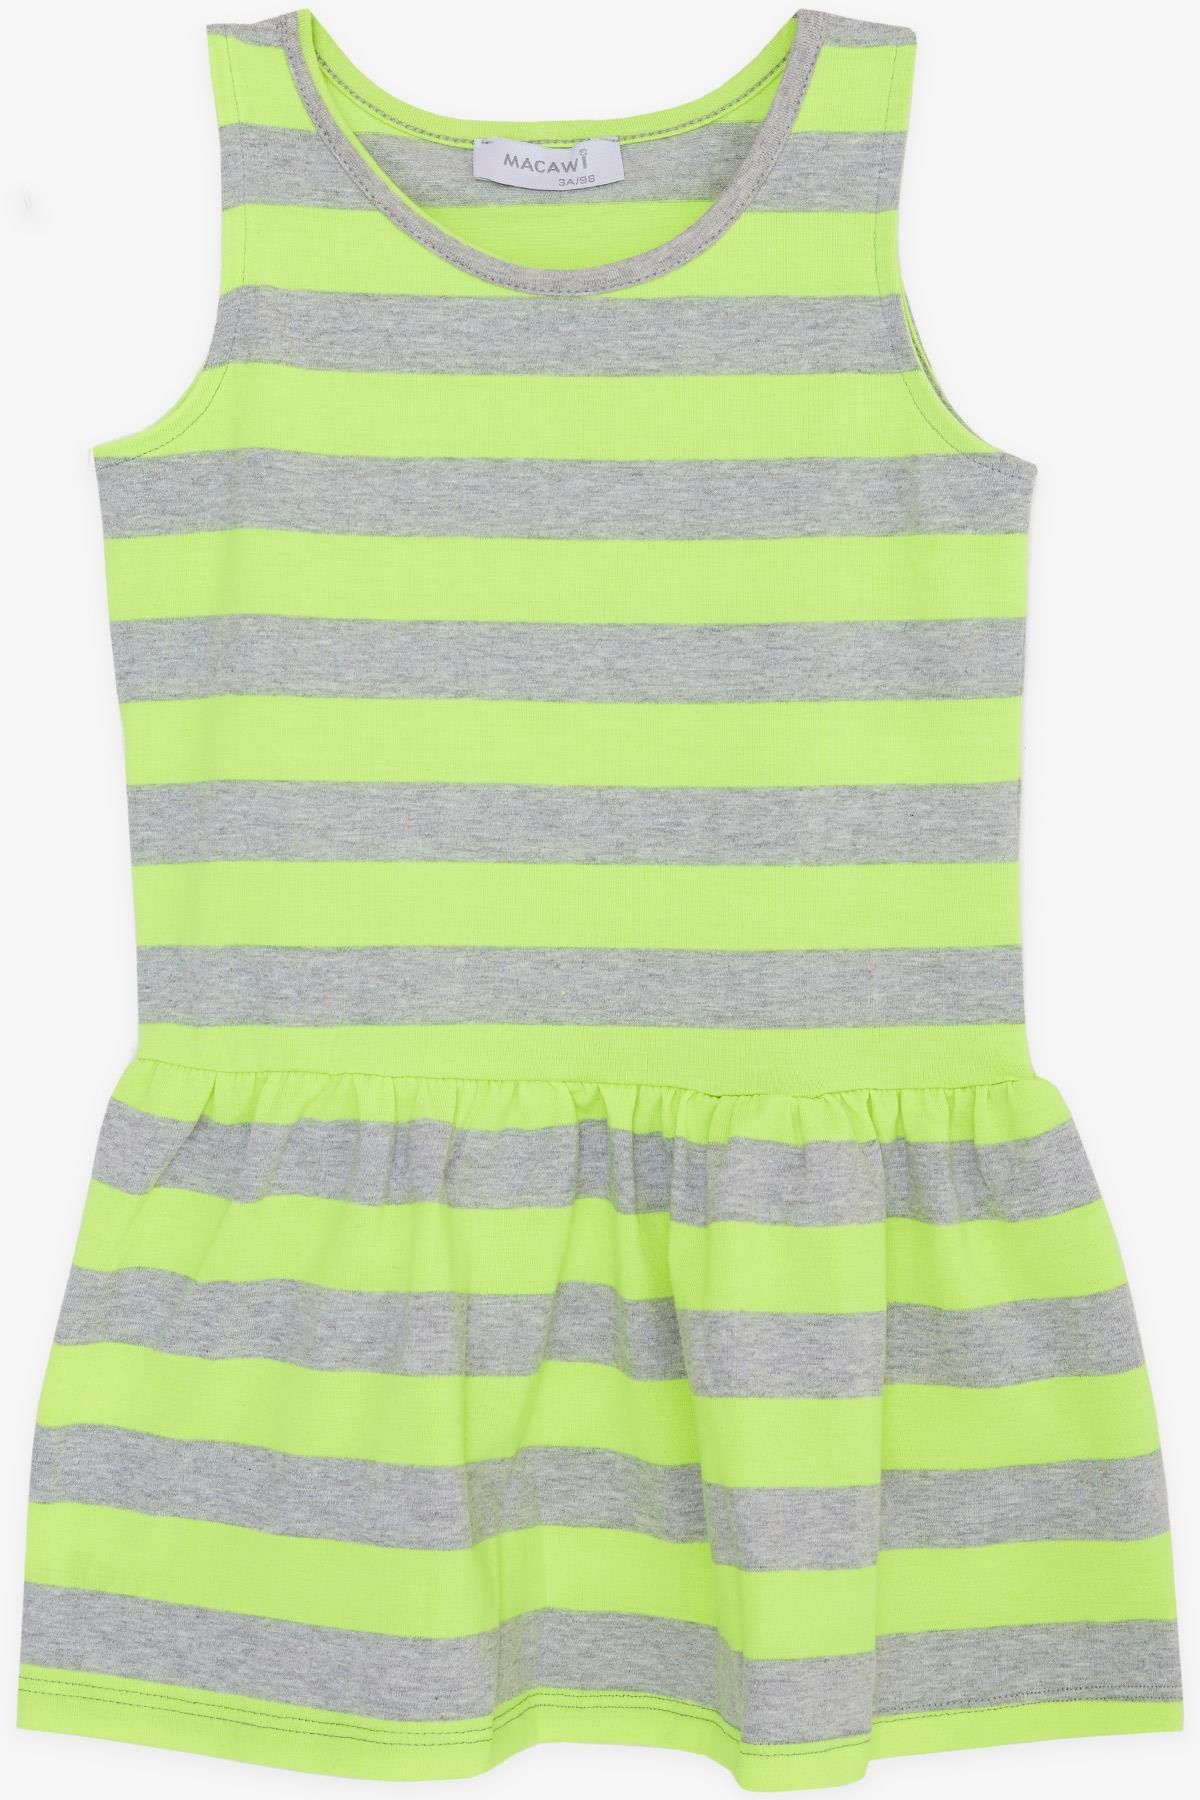 Macawi Breeze Kız Çocuk Elbise Çizgili 1.5-5 Yaş, Neon Sarı